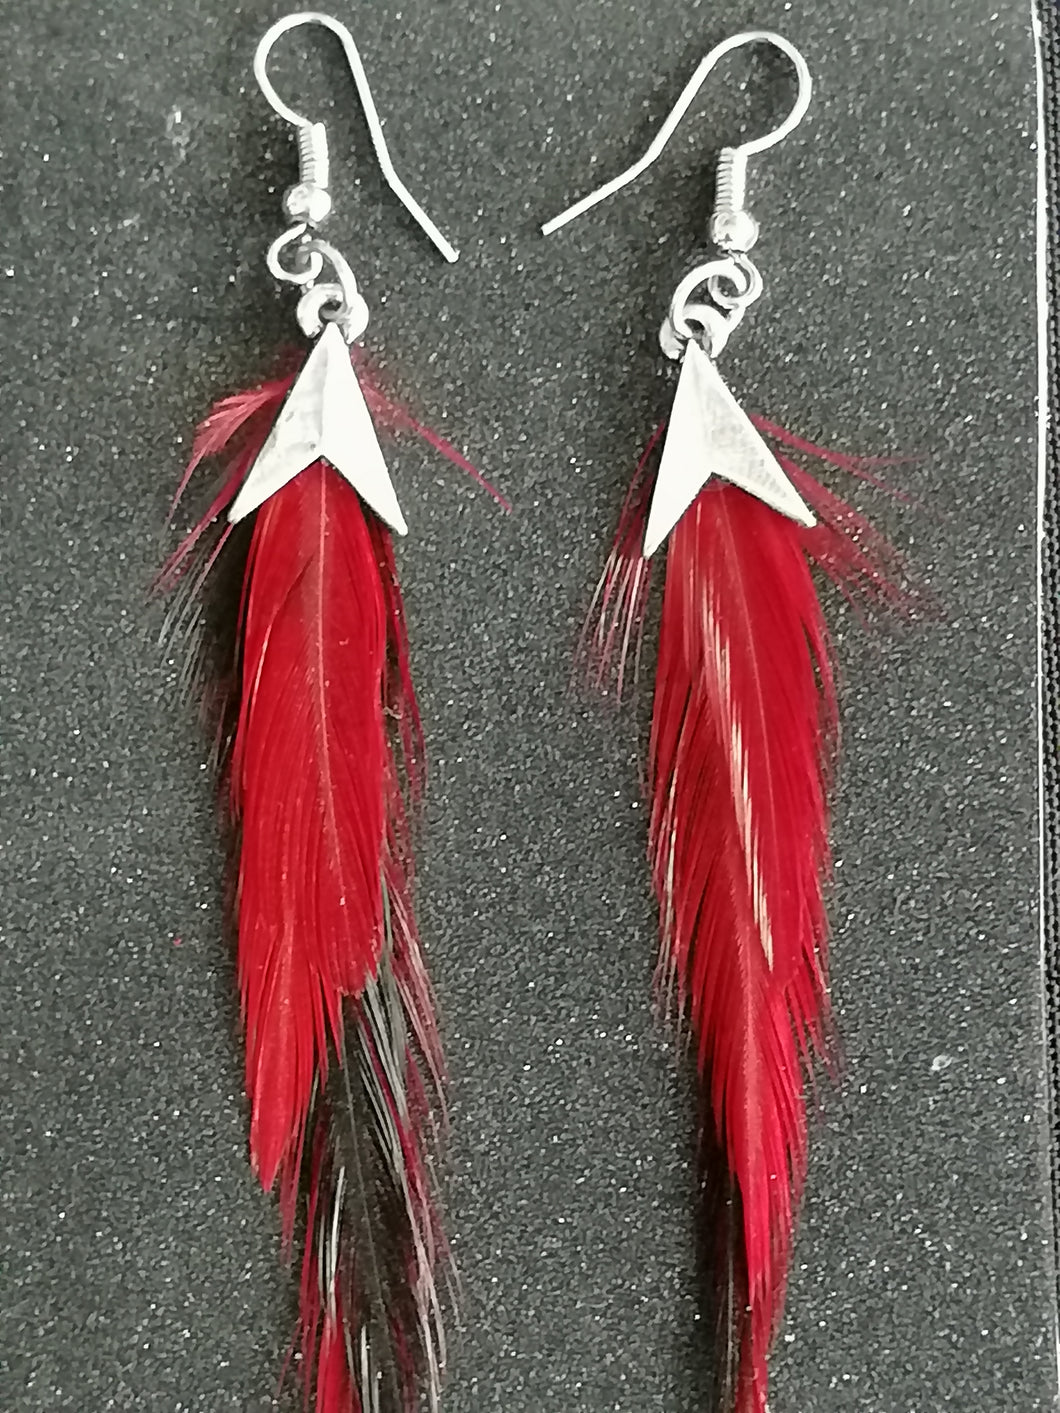 boucles d'oreilles plumes rouges et noires